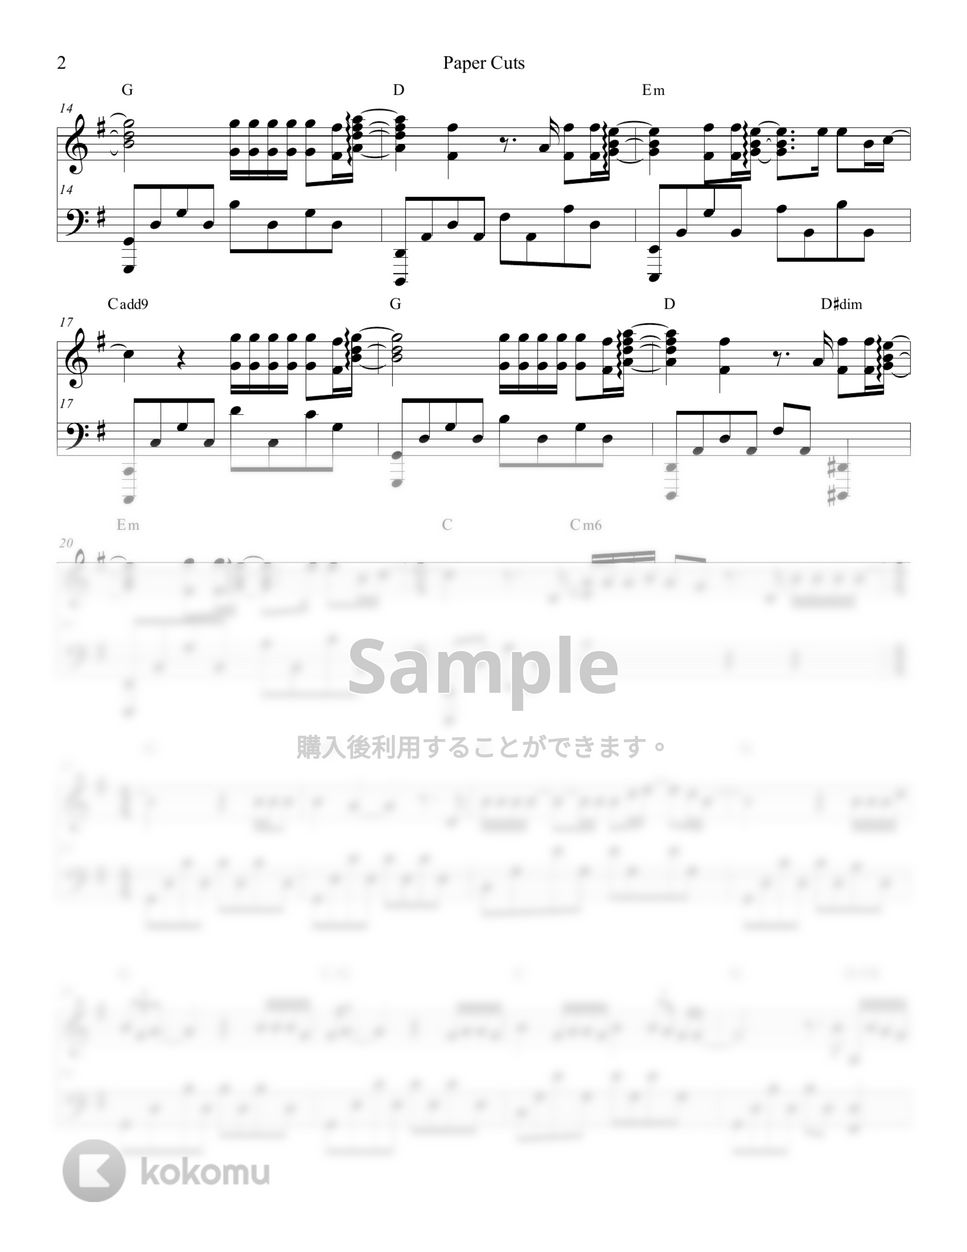 EXO-CBX - Paper Cuts by Lunar Piano